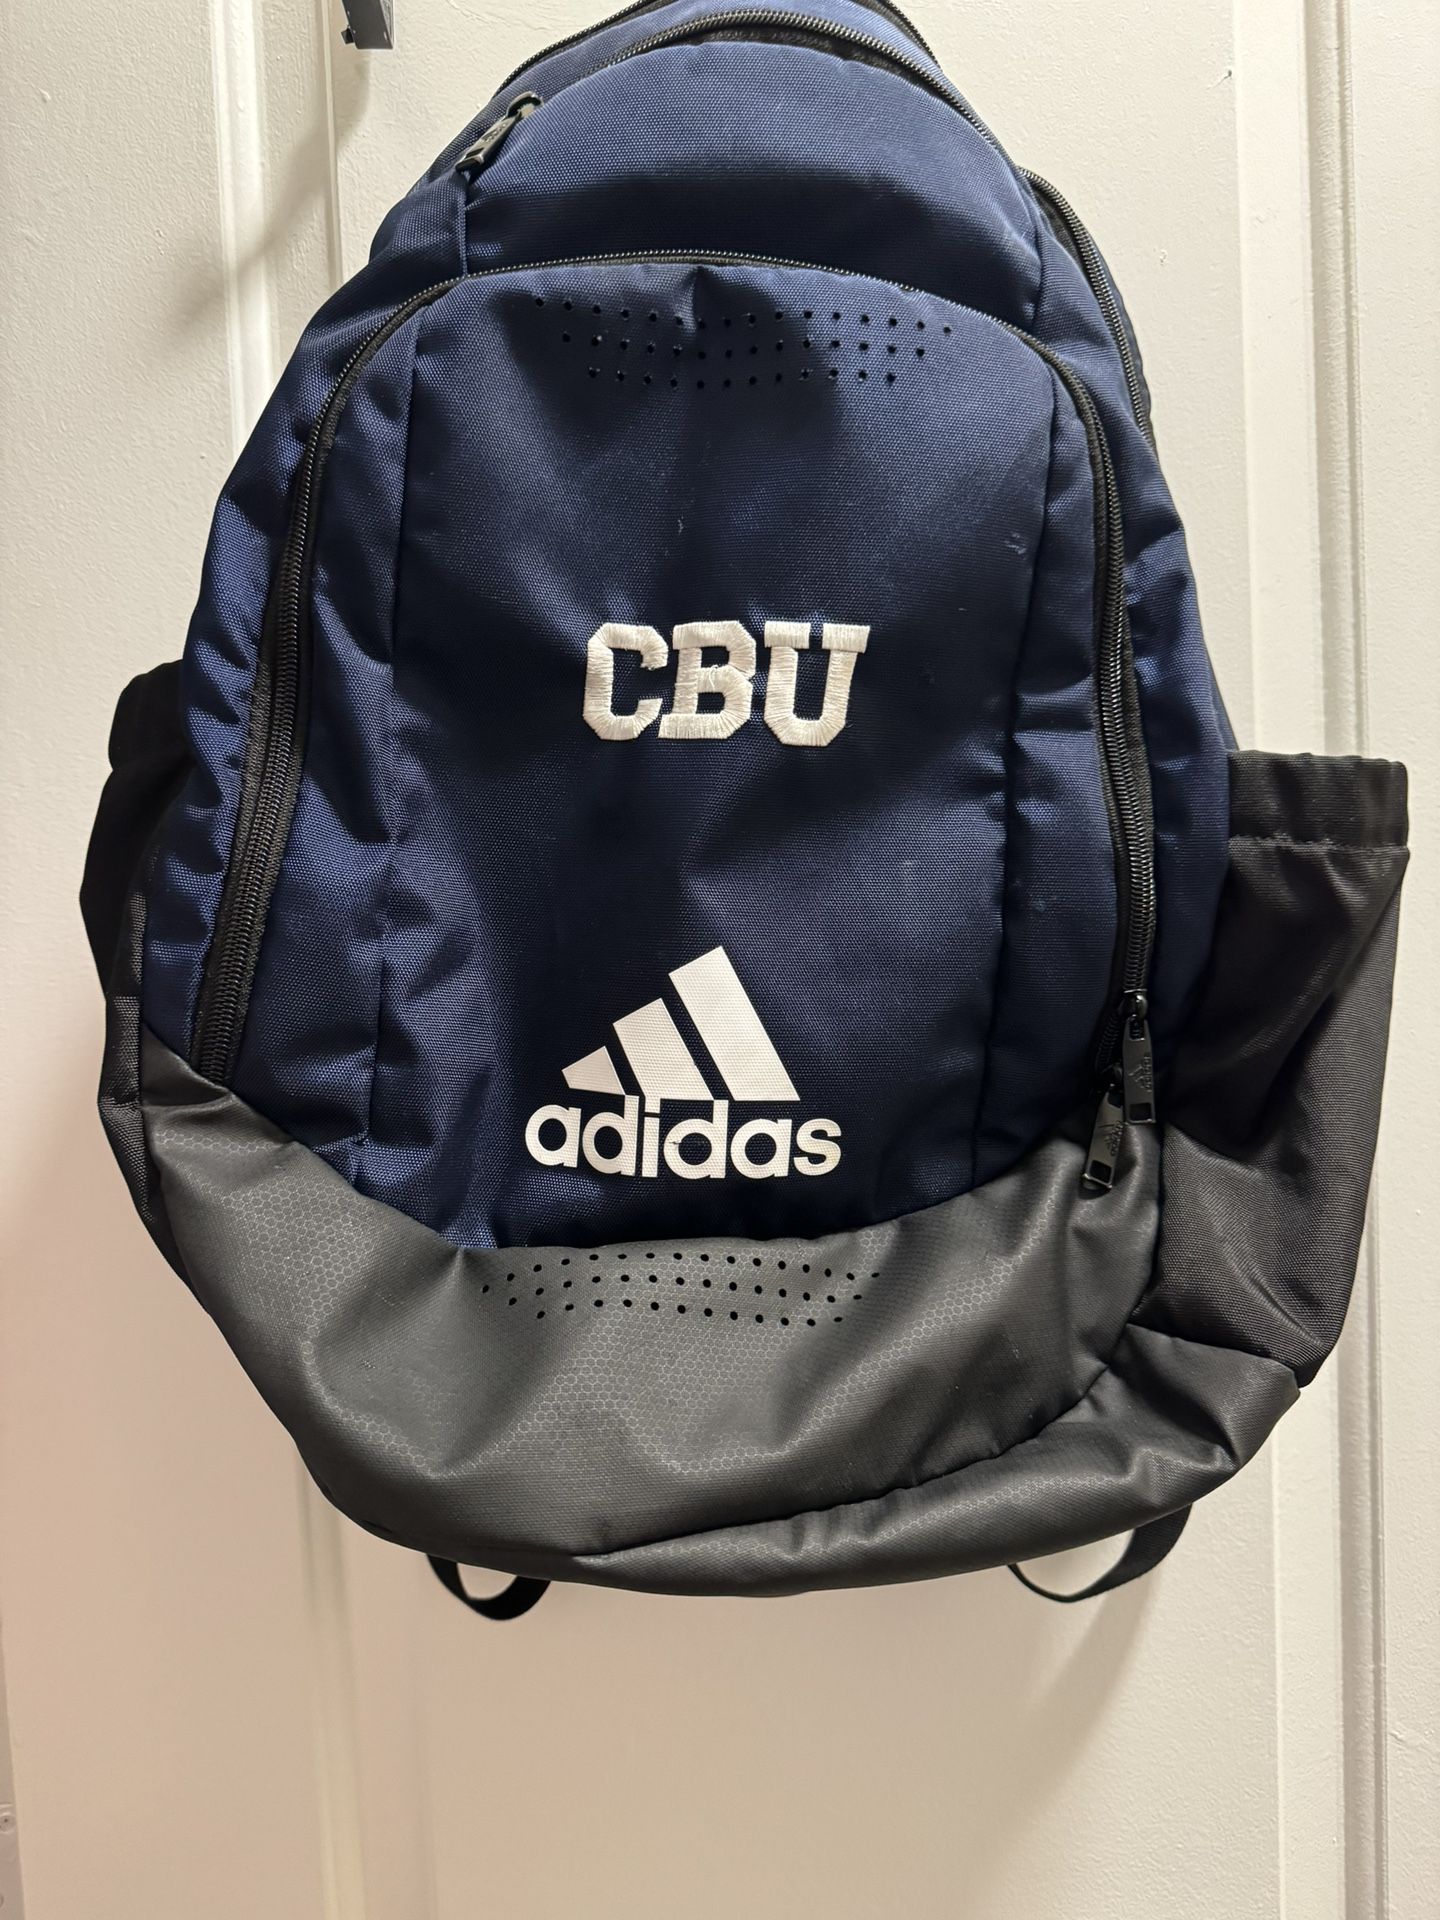 Authentic Large CBU Adidas Backpackj